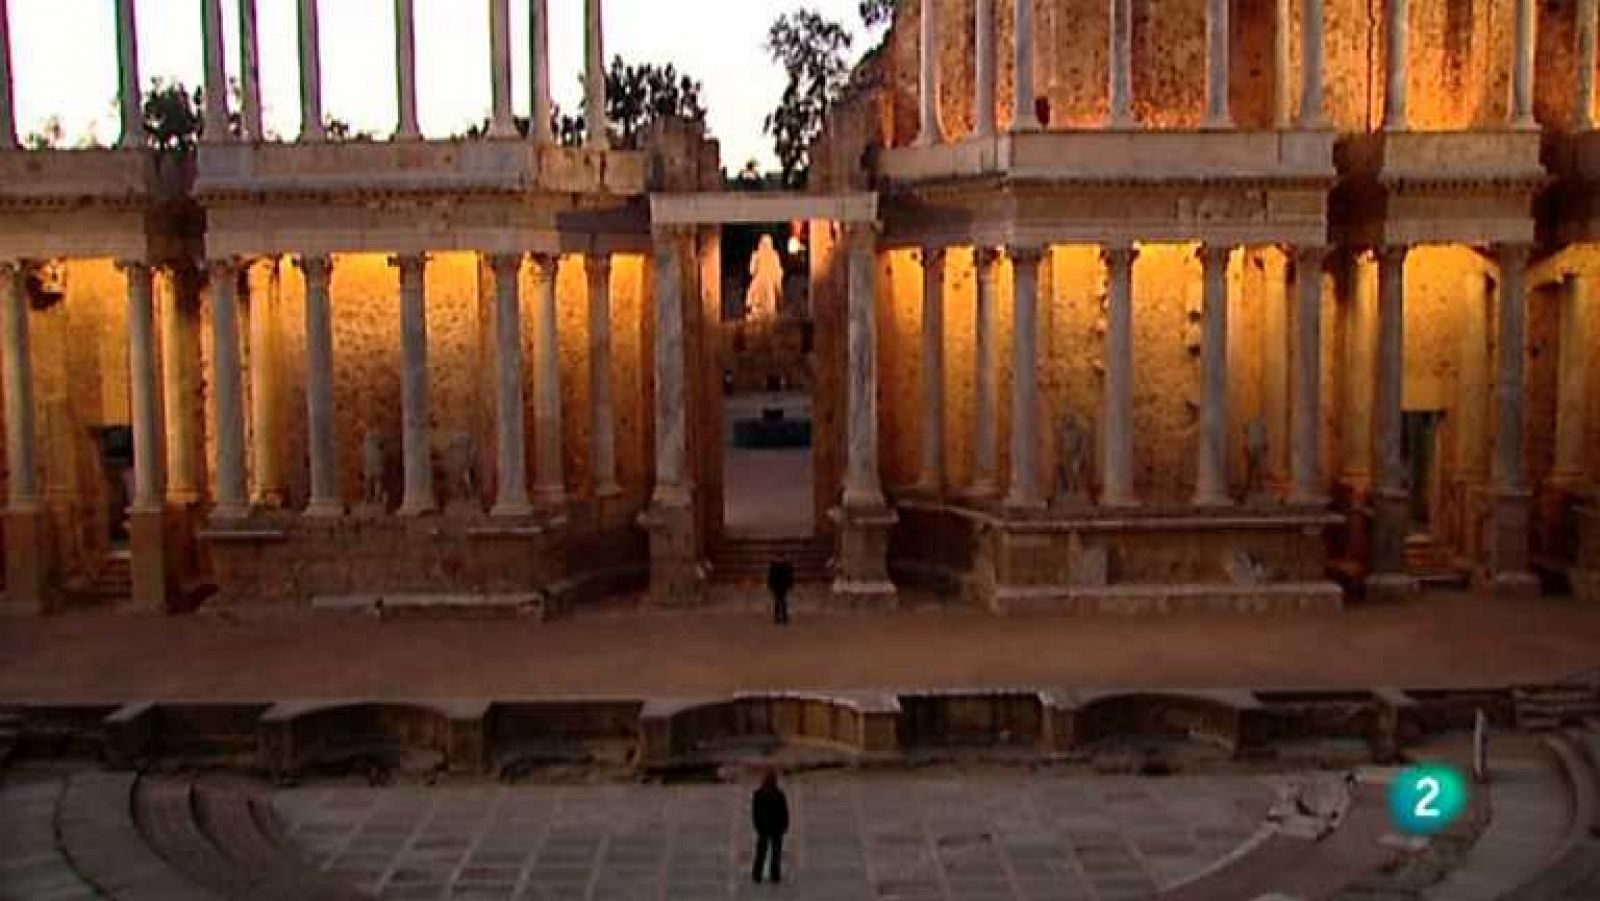 La mitad invisible - Teatro romano de Mérida - Ver ahora